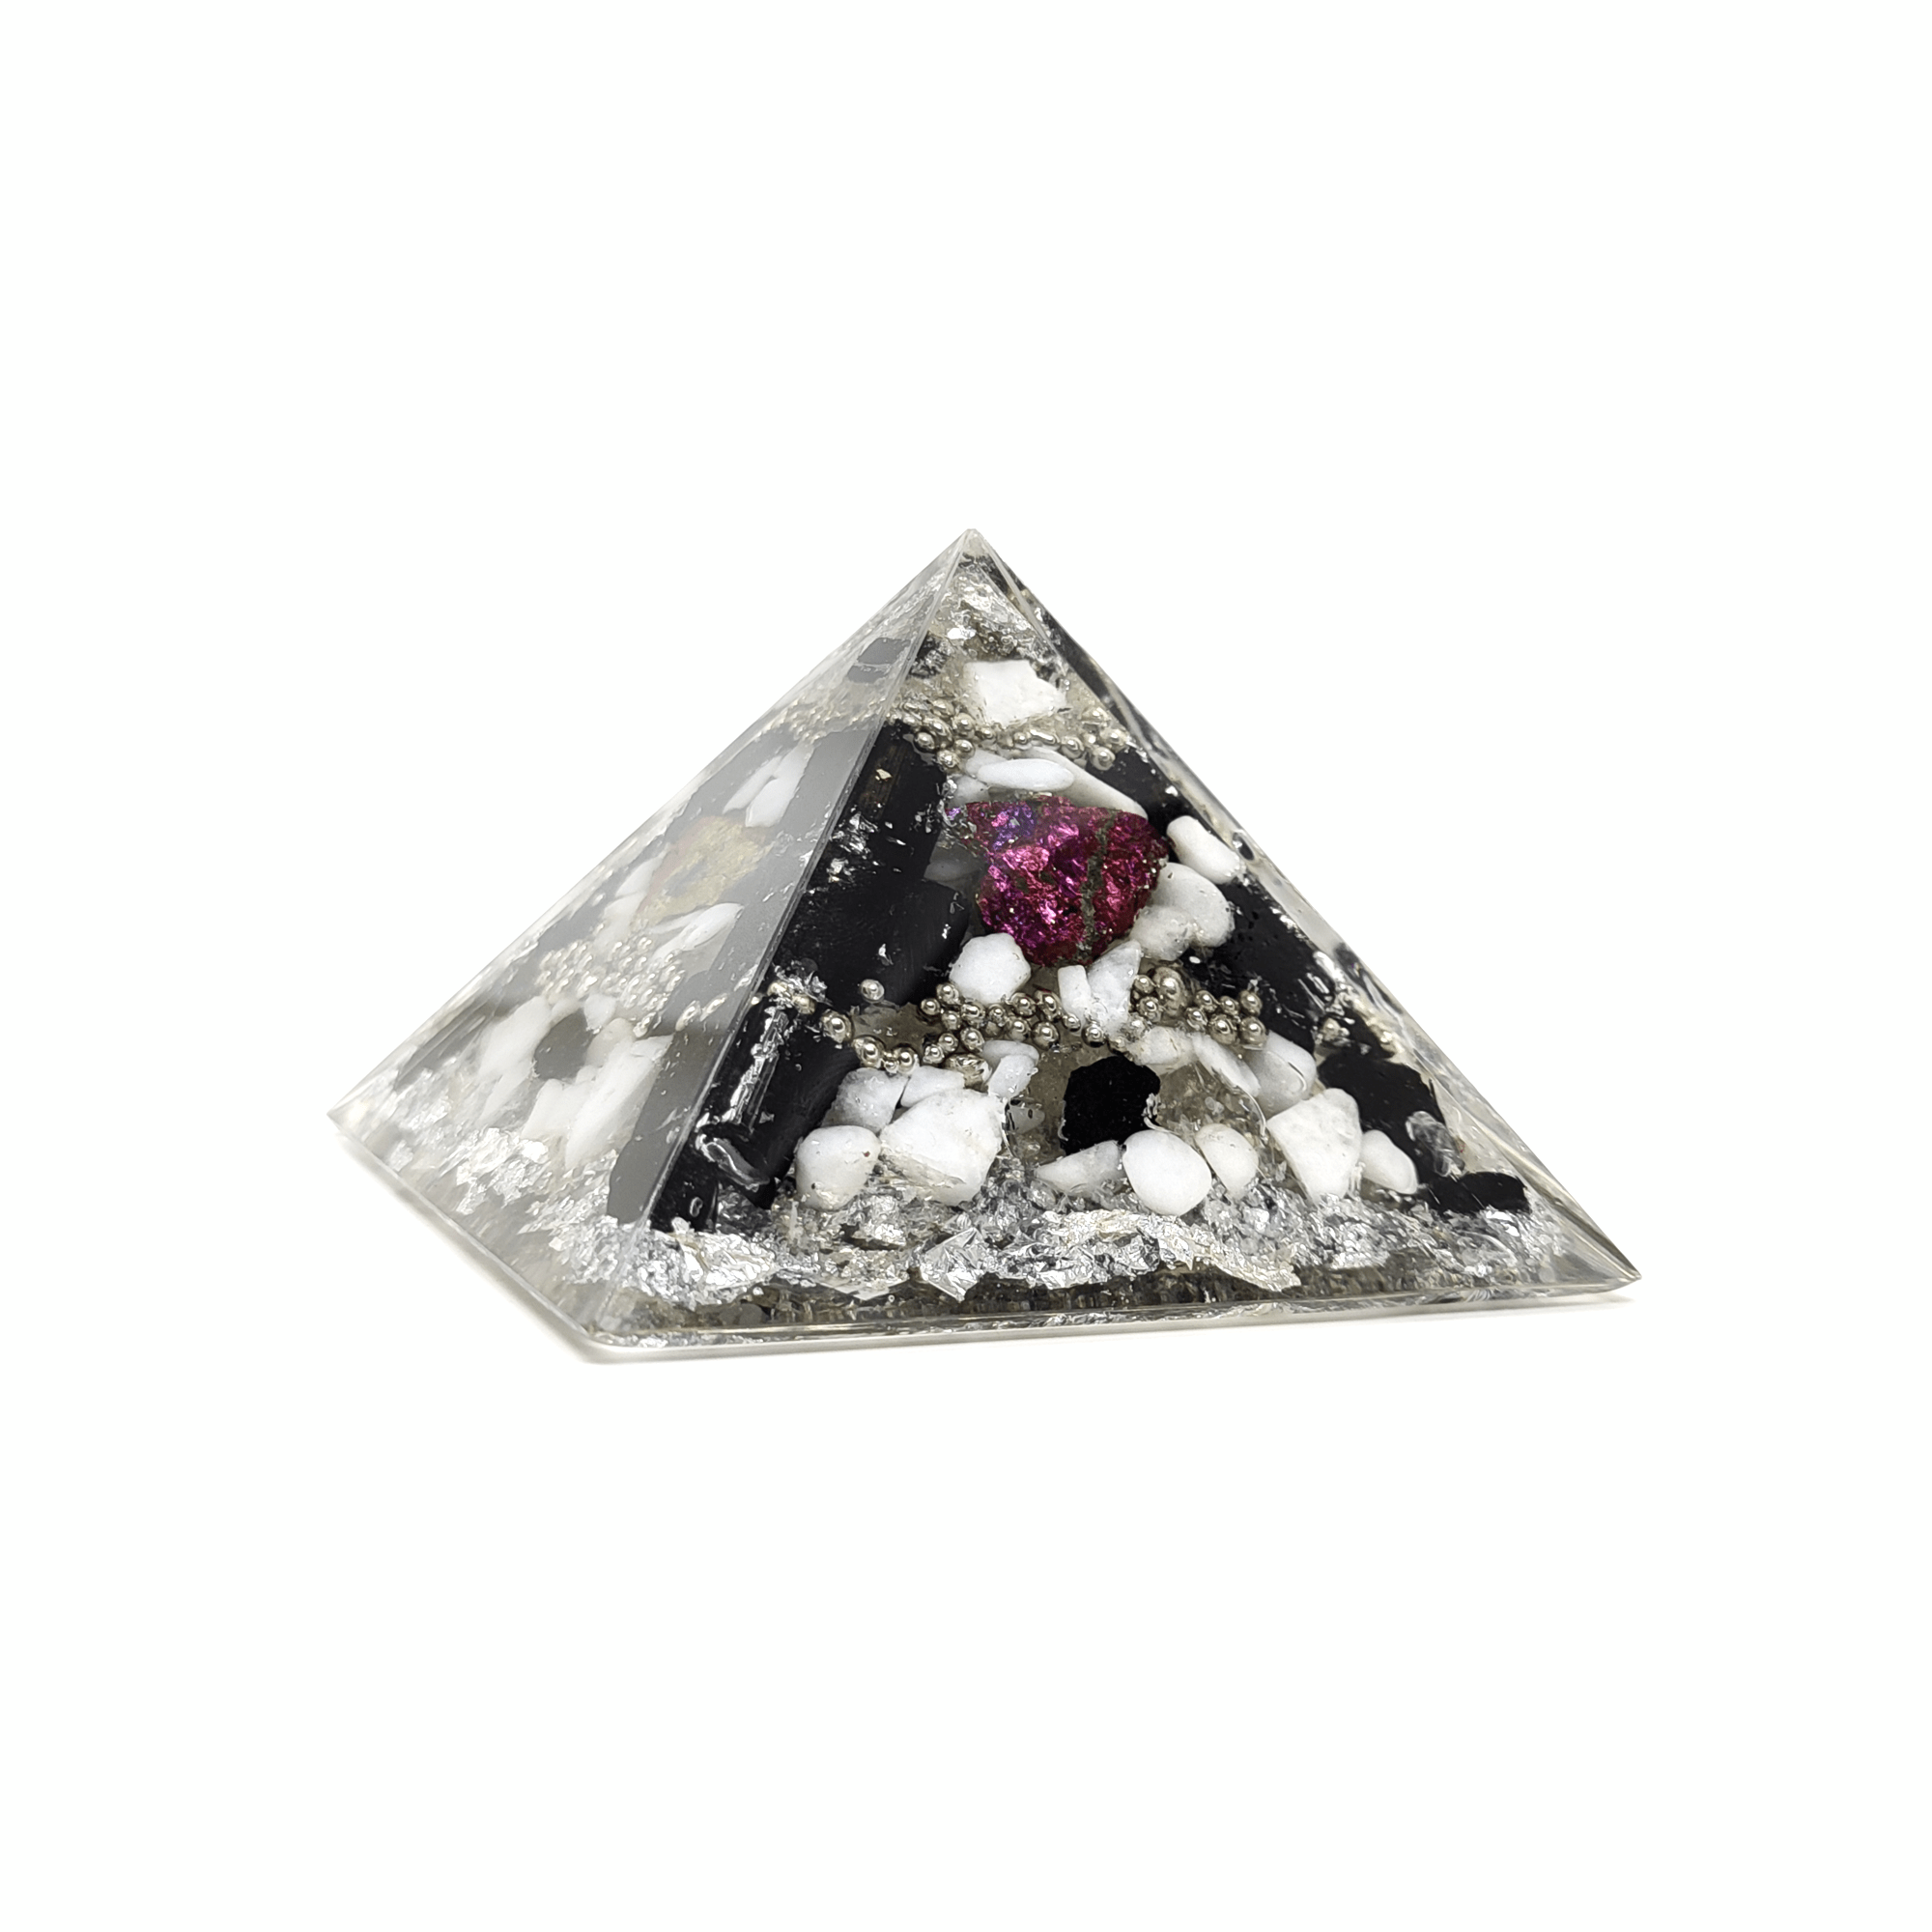 Schwarz/Weiß & bunte Orgonit Pyramide bestehend aus Edelsteinen, Epoxidharz & Metallen.